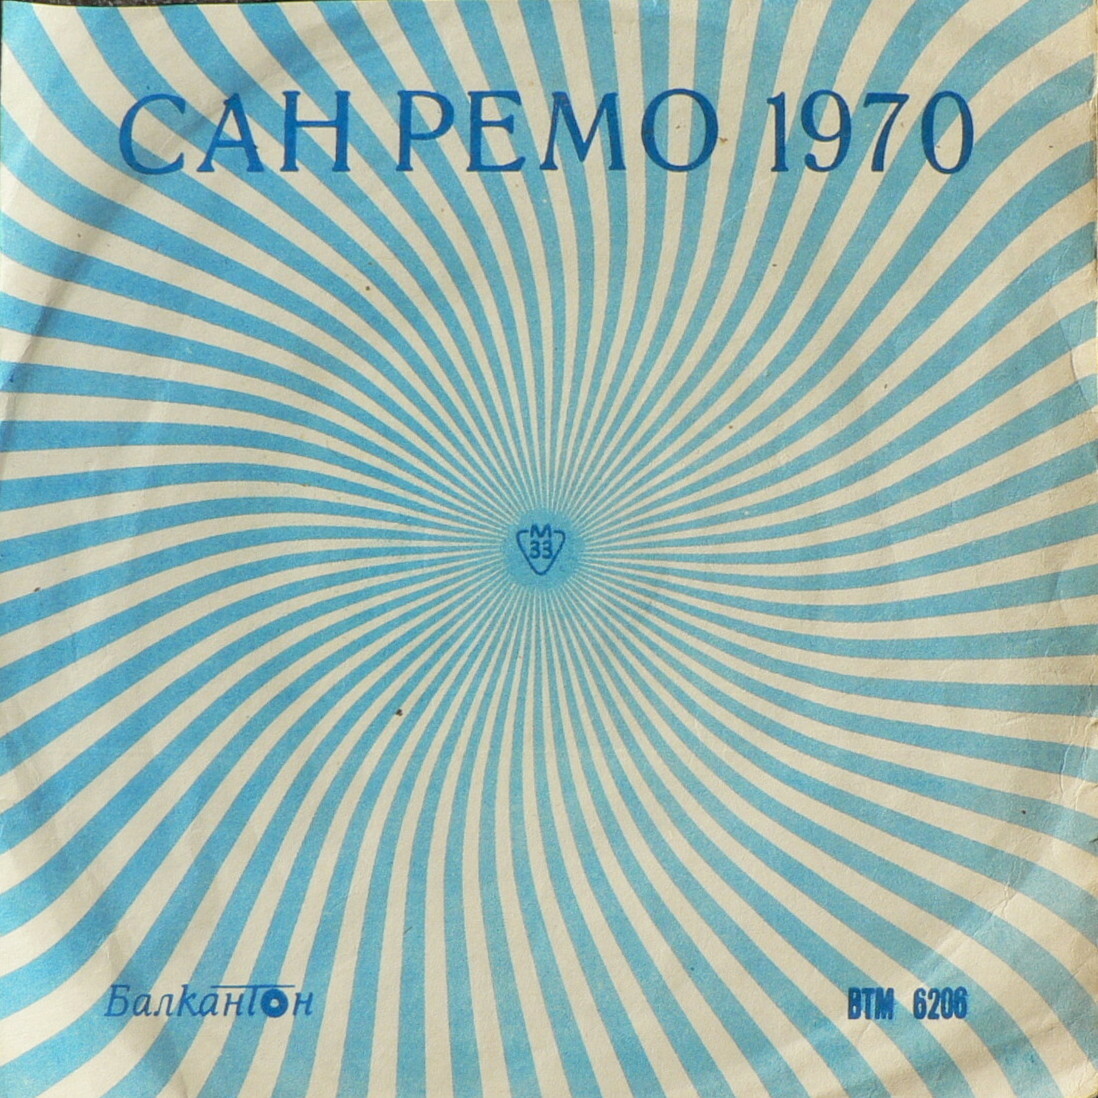 Сан-Ремо '70